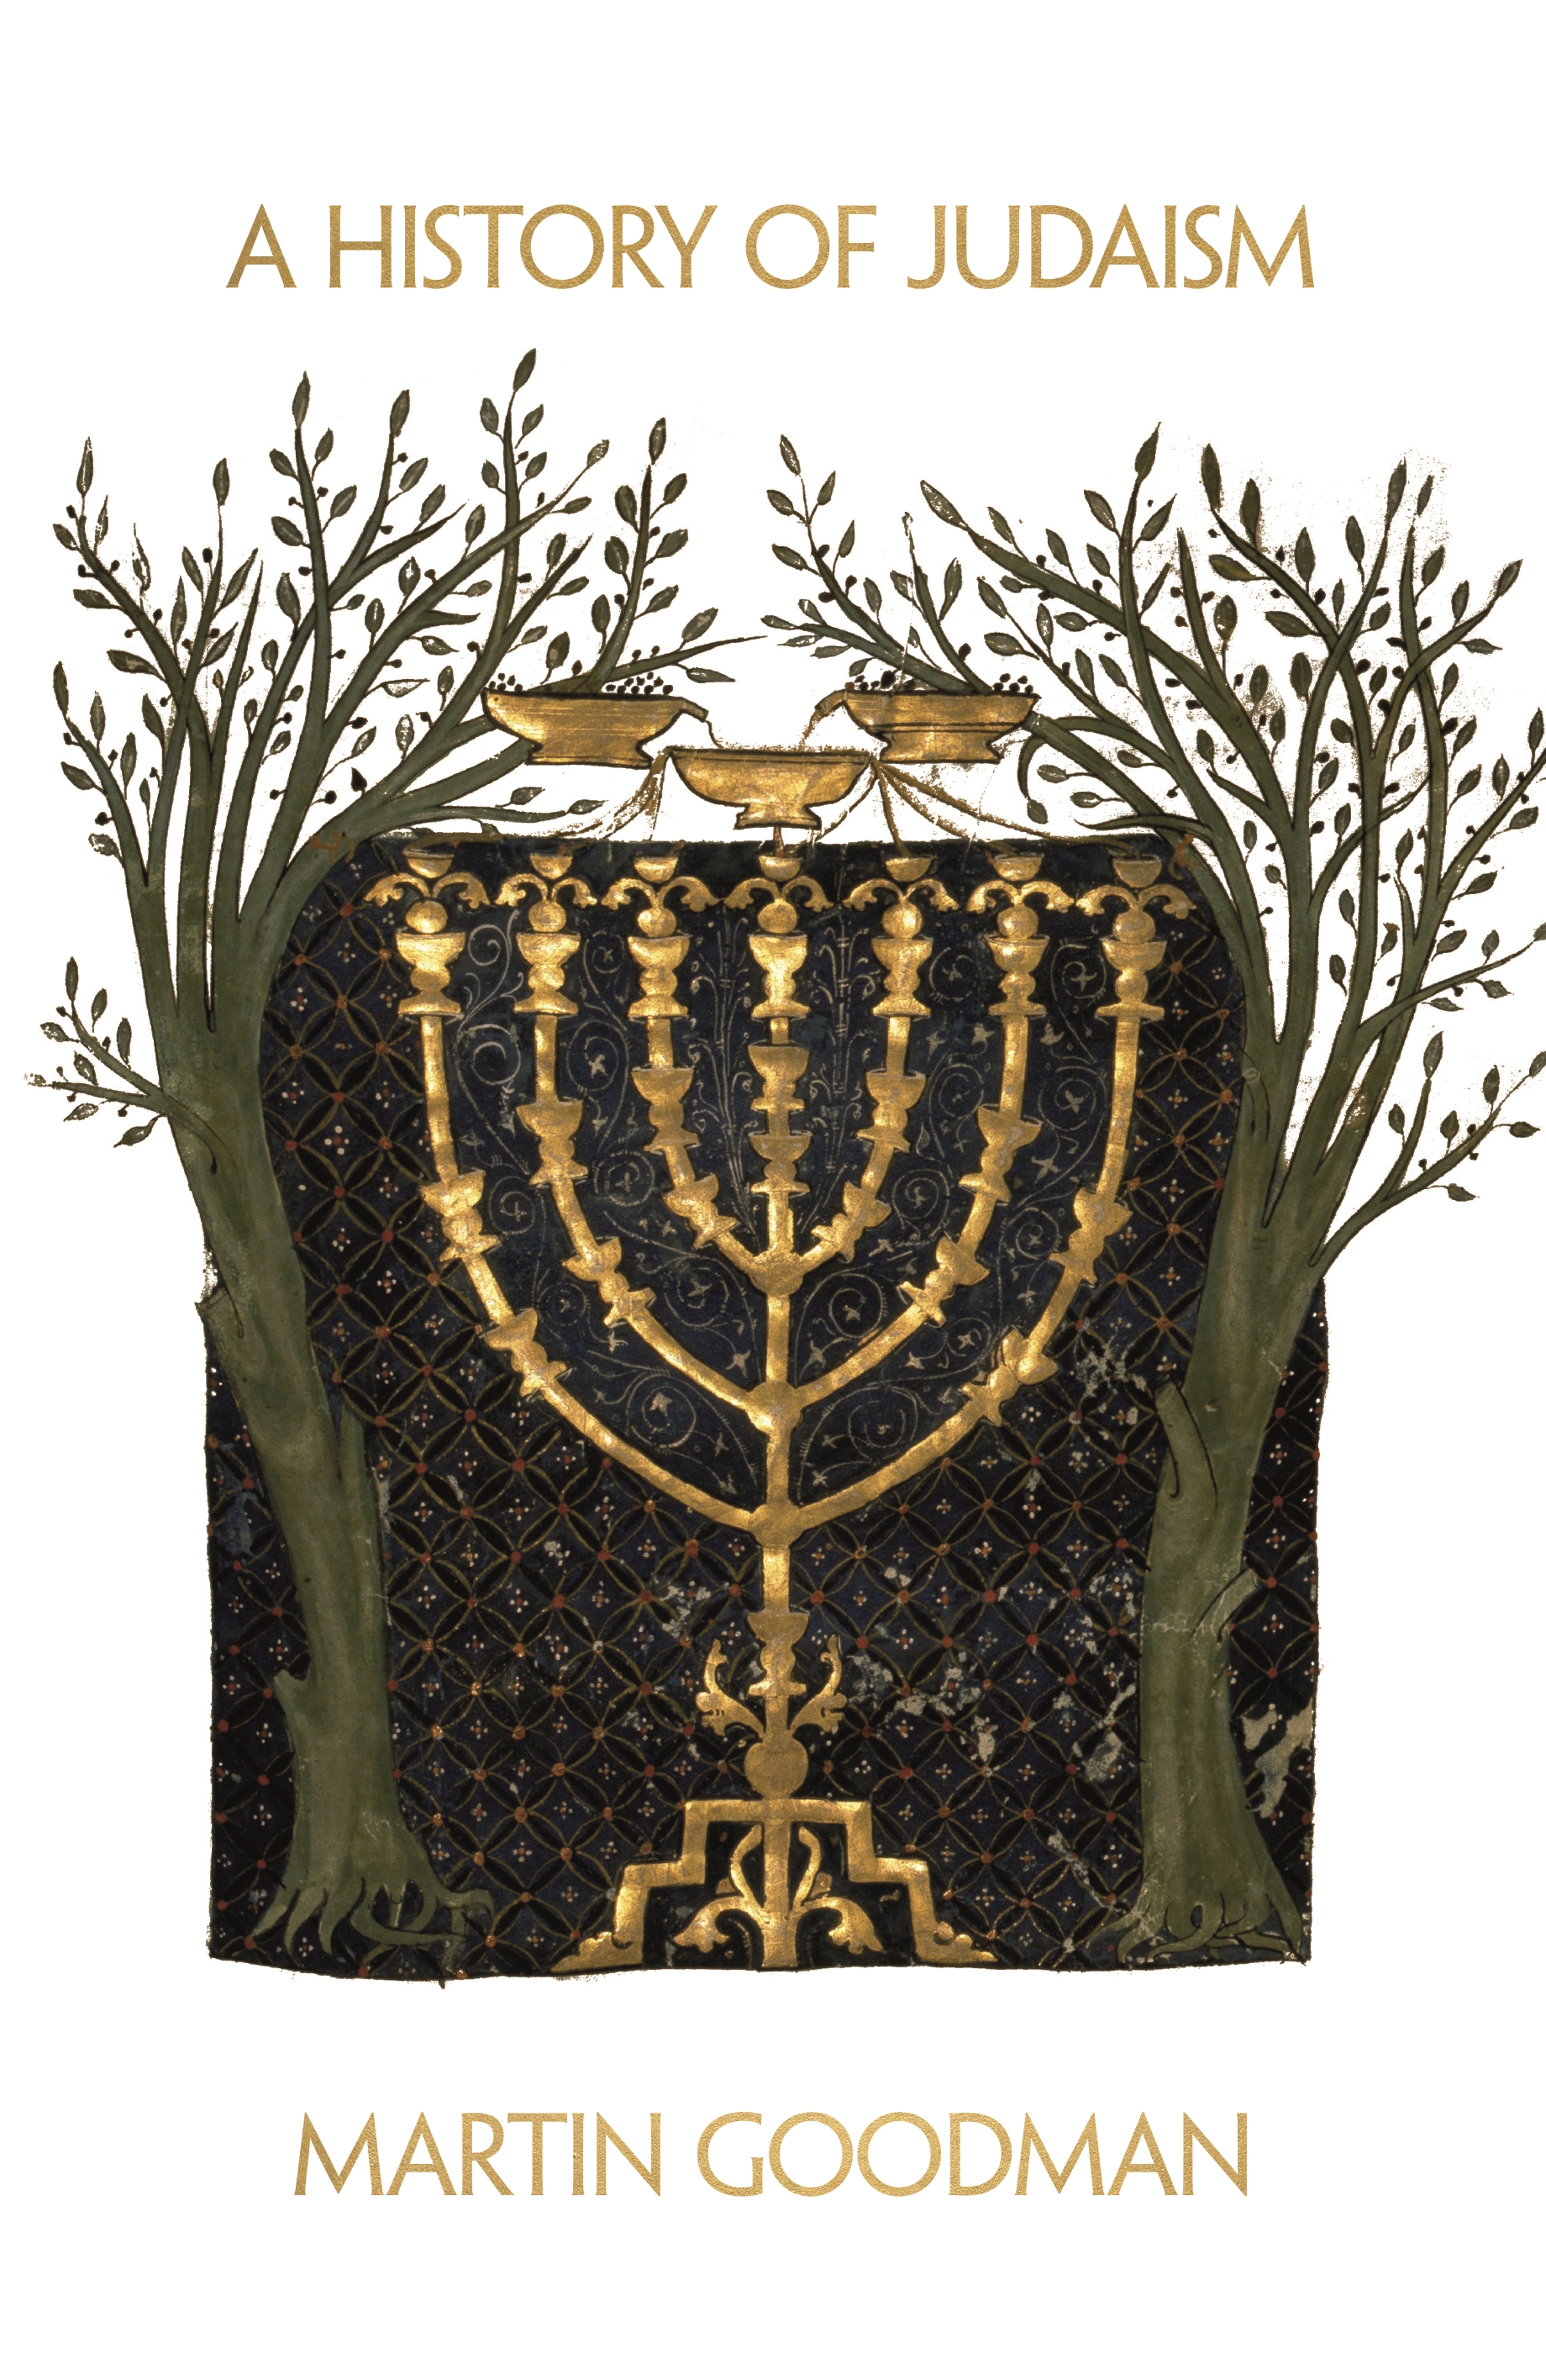 judaism origin summary